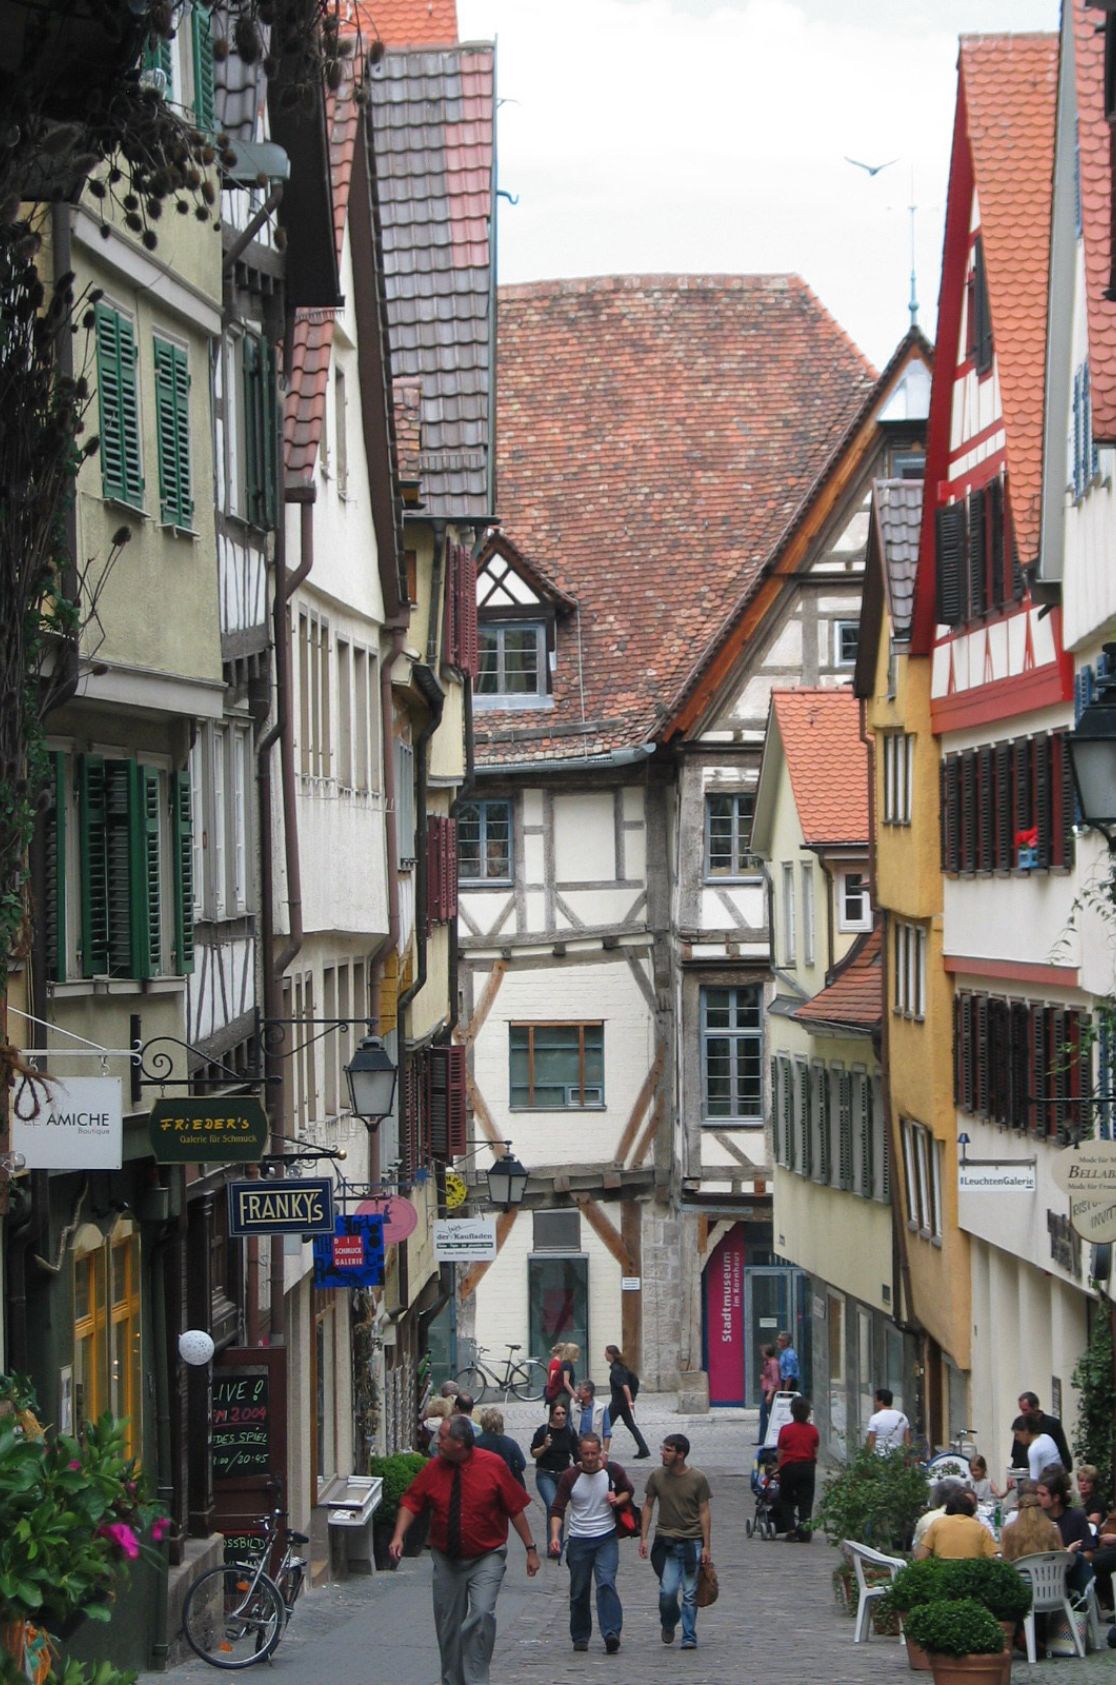 Old town alleys in Tübingen